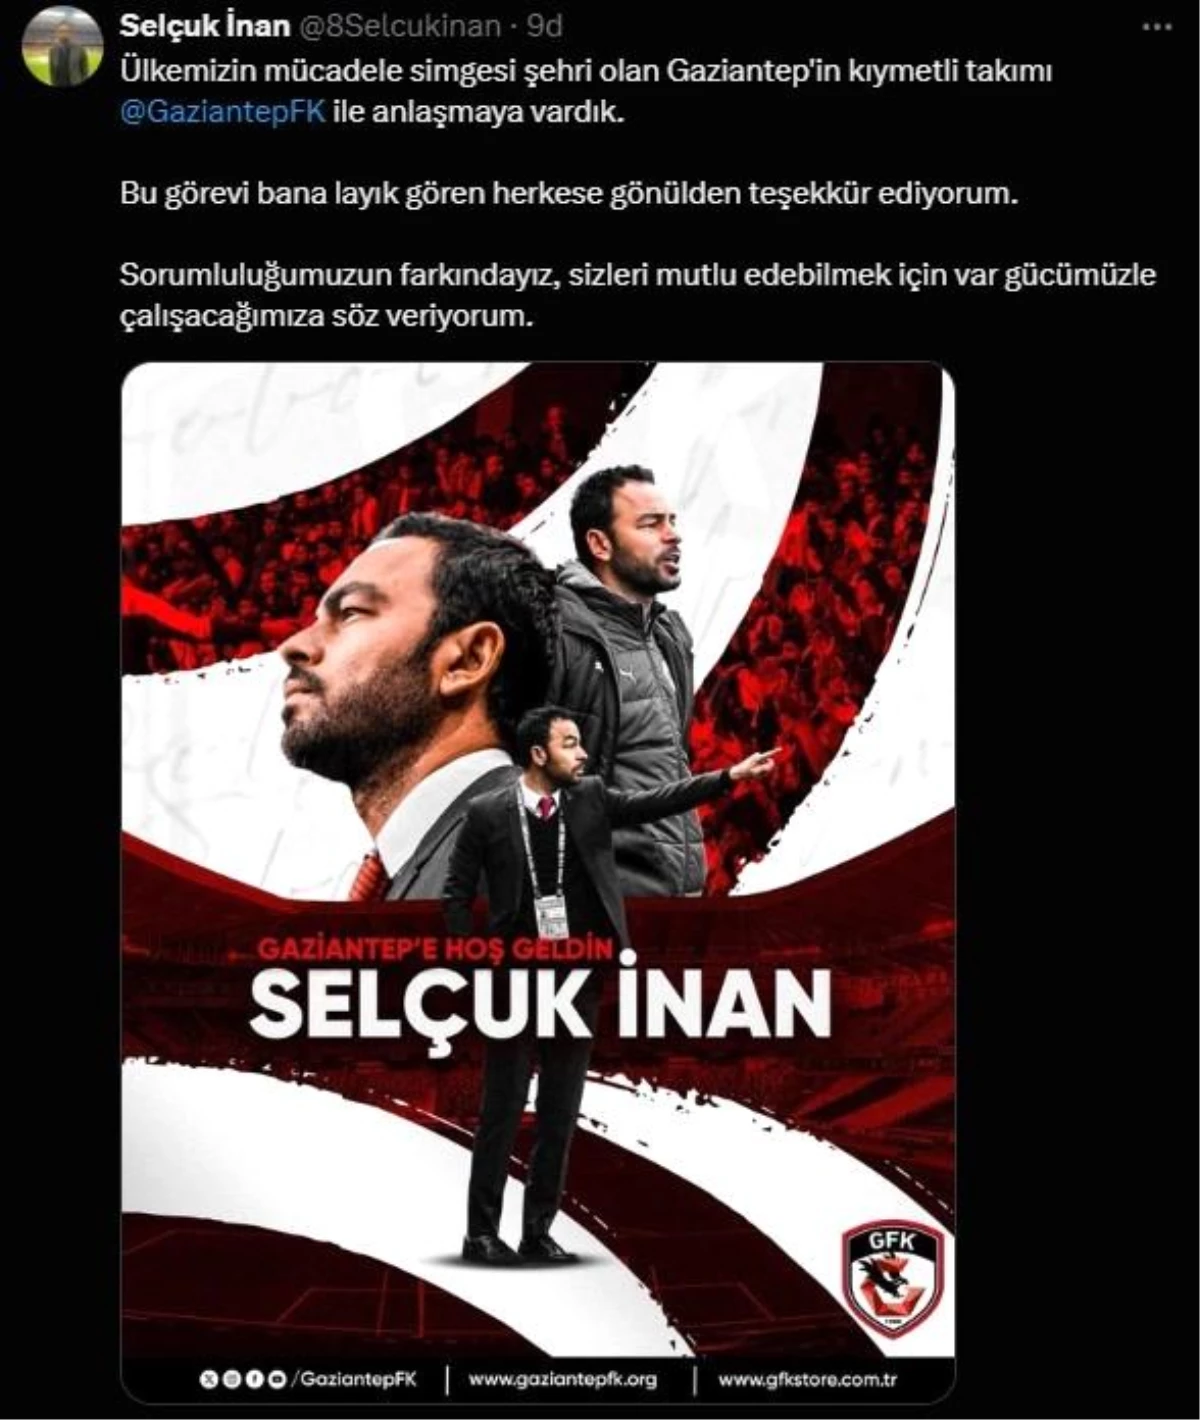 Gaziantep FK Teknik Direktörü Selçuk İnan, 1.5 yıllık sözleşmeyi imzaladıktan sonra ilk mesajını sosyal medya hesabından verdi